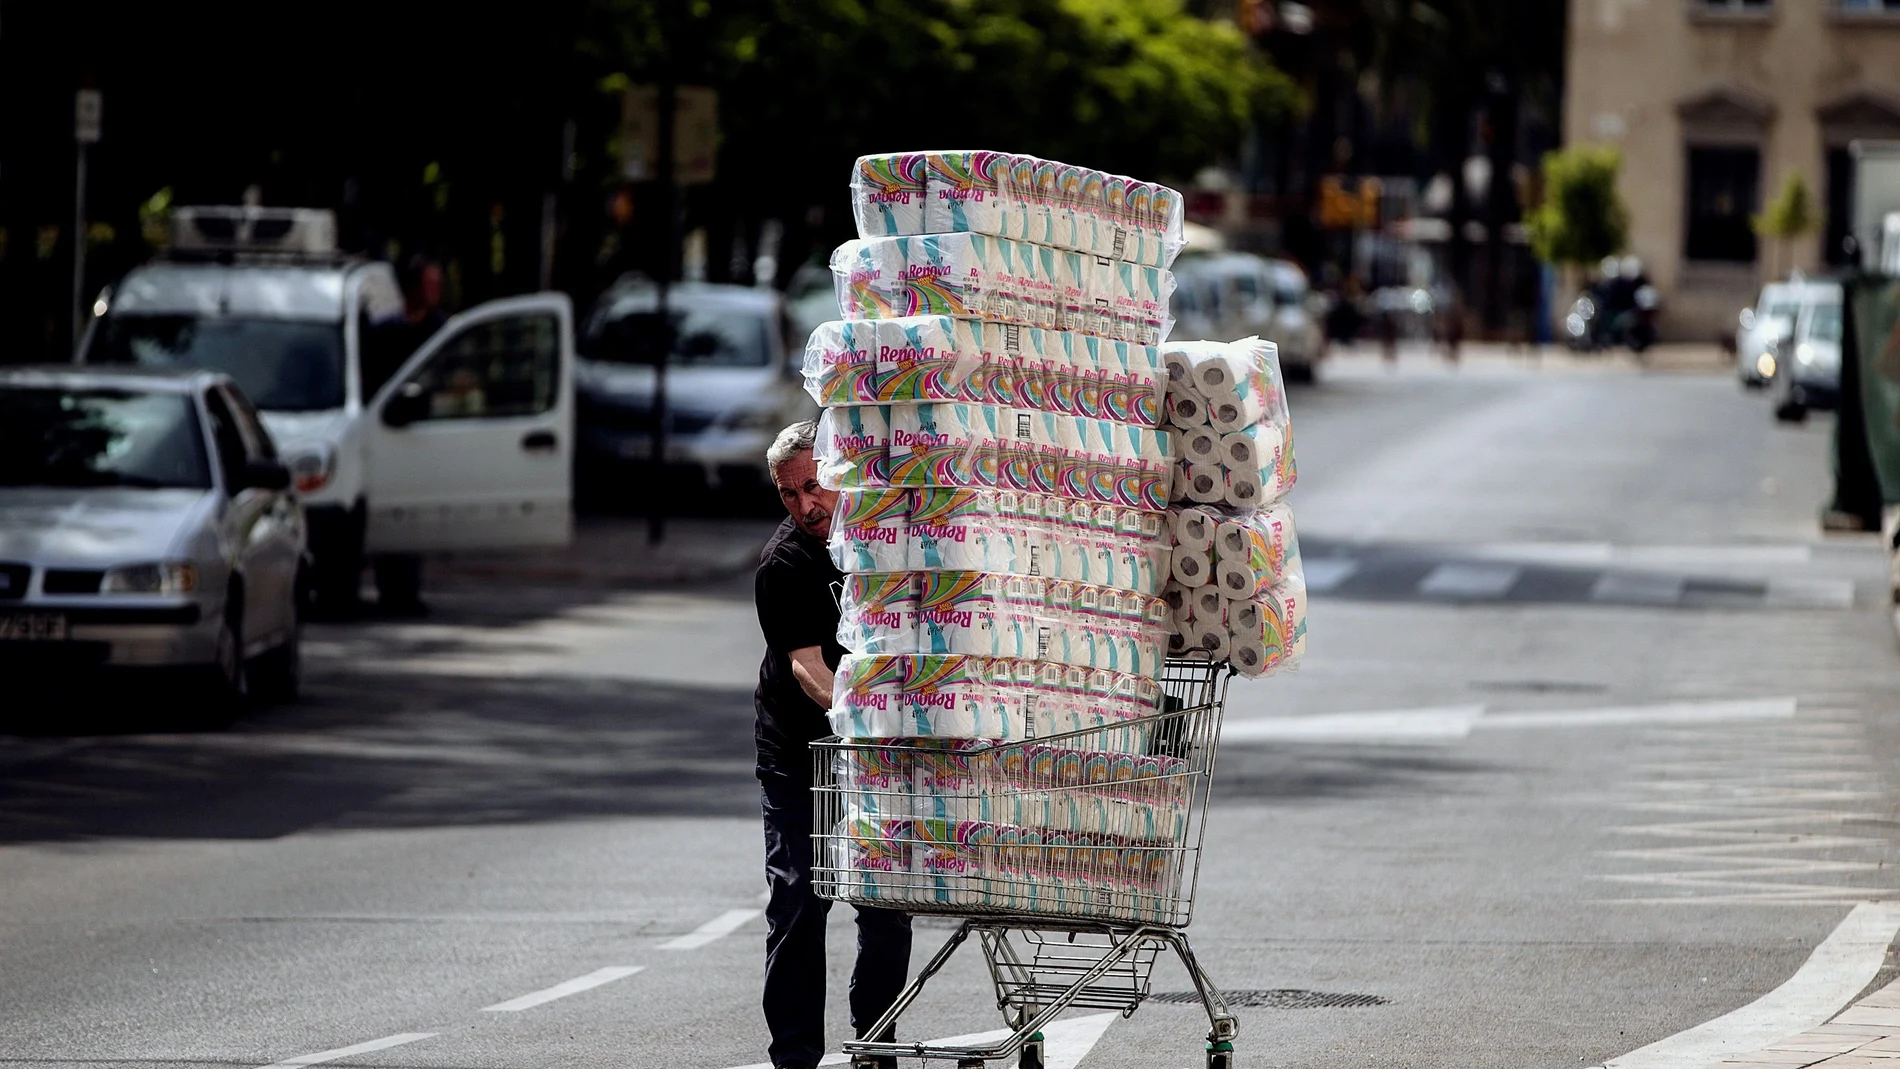 Fotografía del 12 de marzo del año 2020. Un hombre transporta numerosos rollos de papel higiénico. Un producto especialmente solicitado en aquel momento, debido a la pandemia del Coronavirus | Fuente: EFE/Jorge Zapata